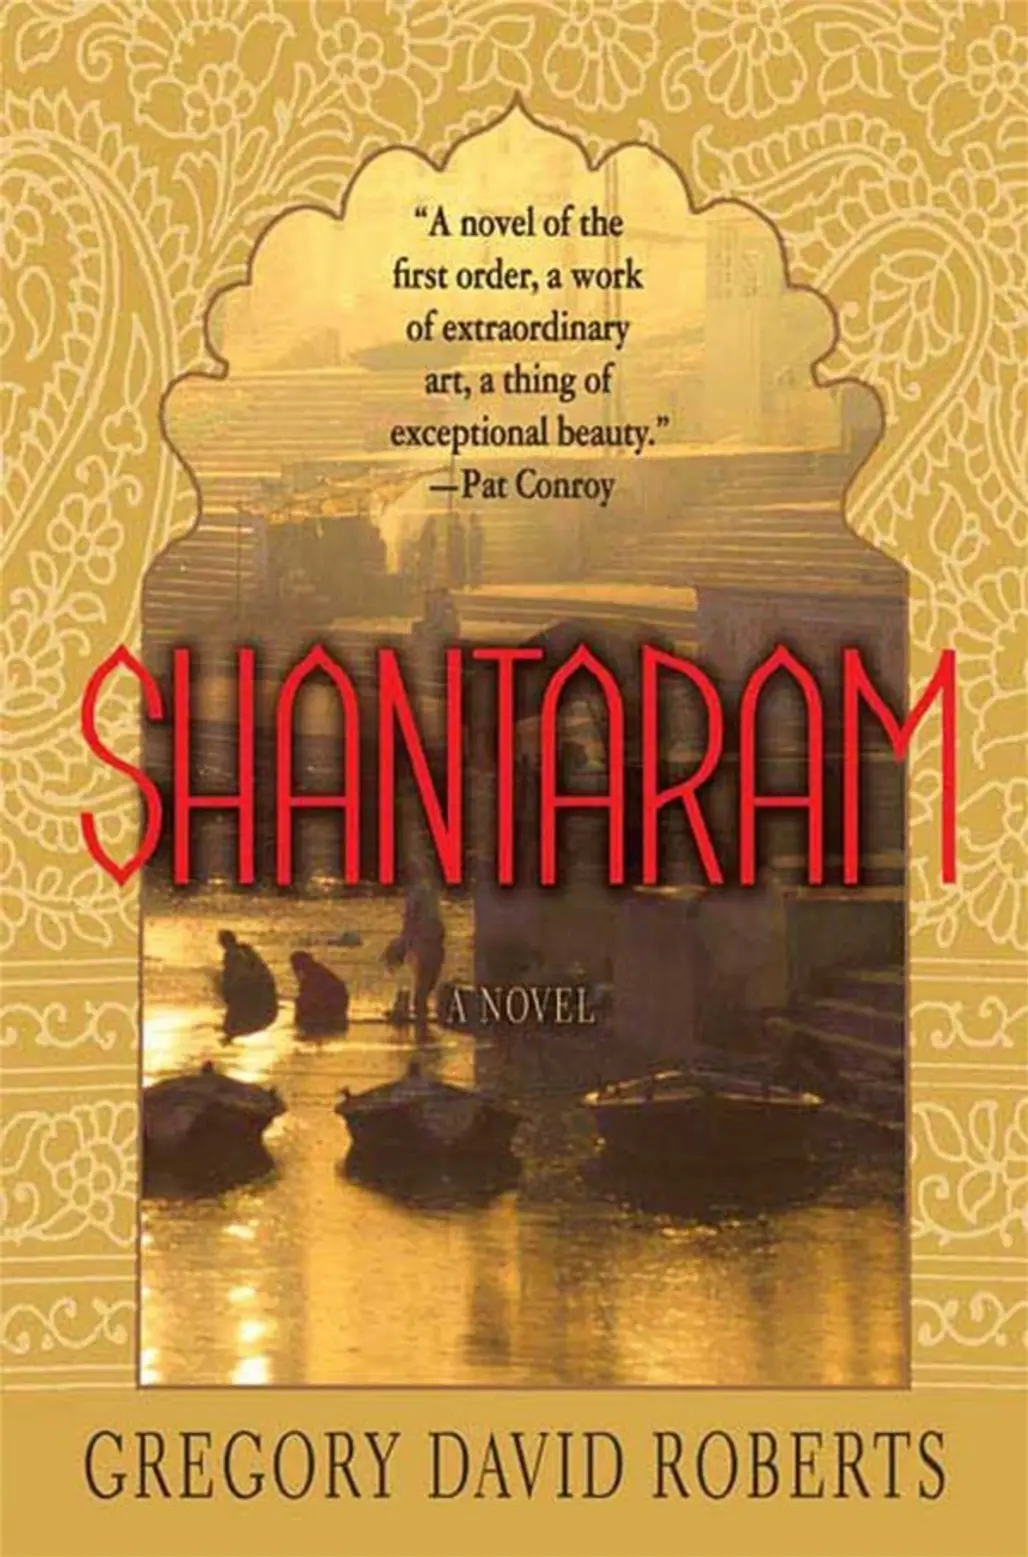 Shantaram: a Novel by Gregory David Roberts